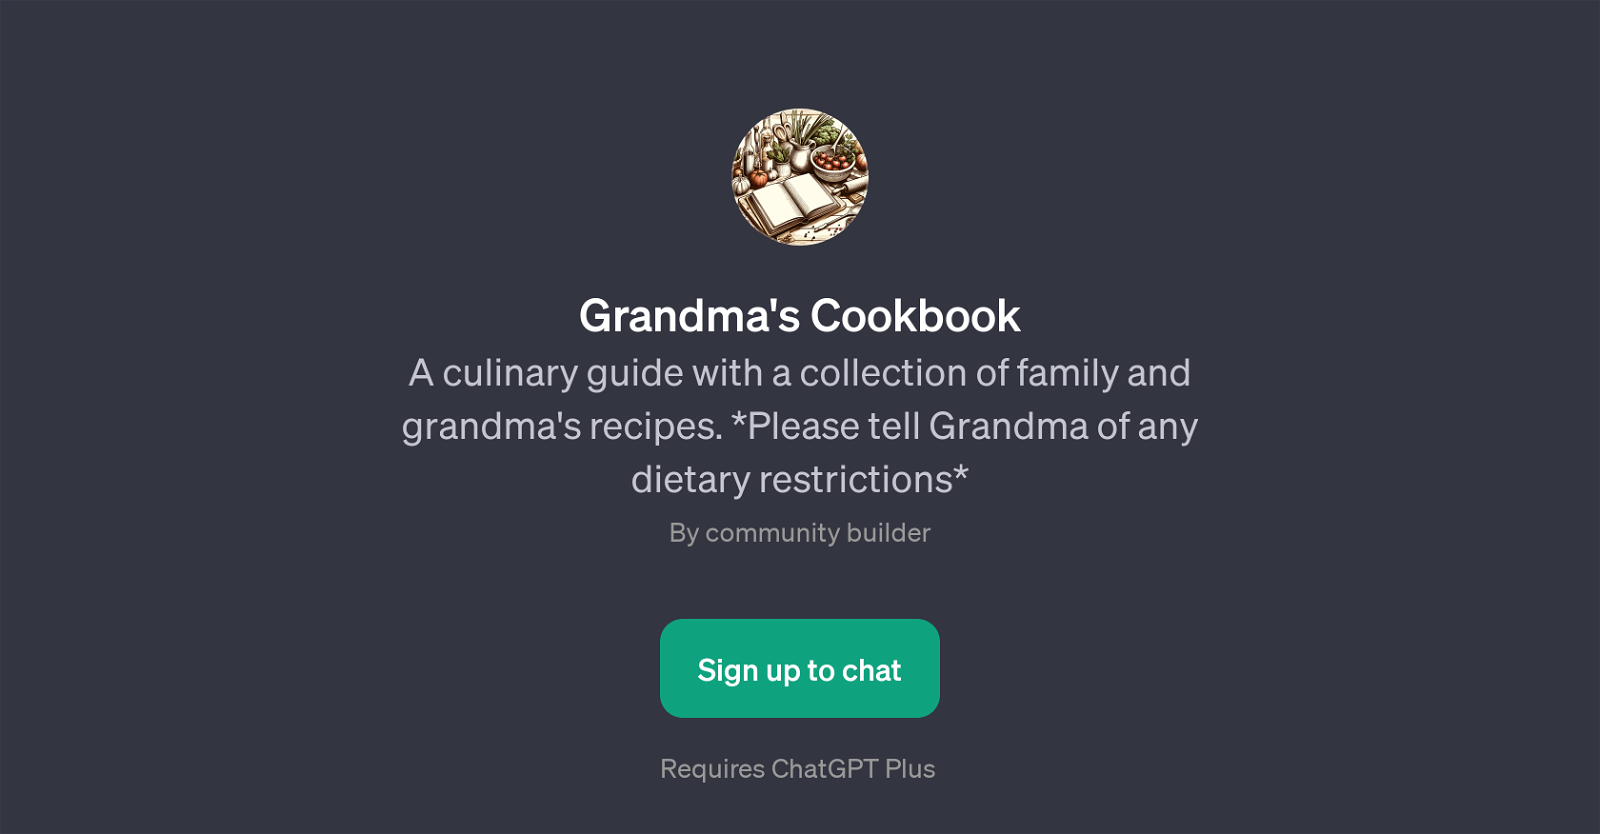 Grandma's Cookbook website